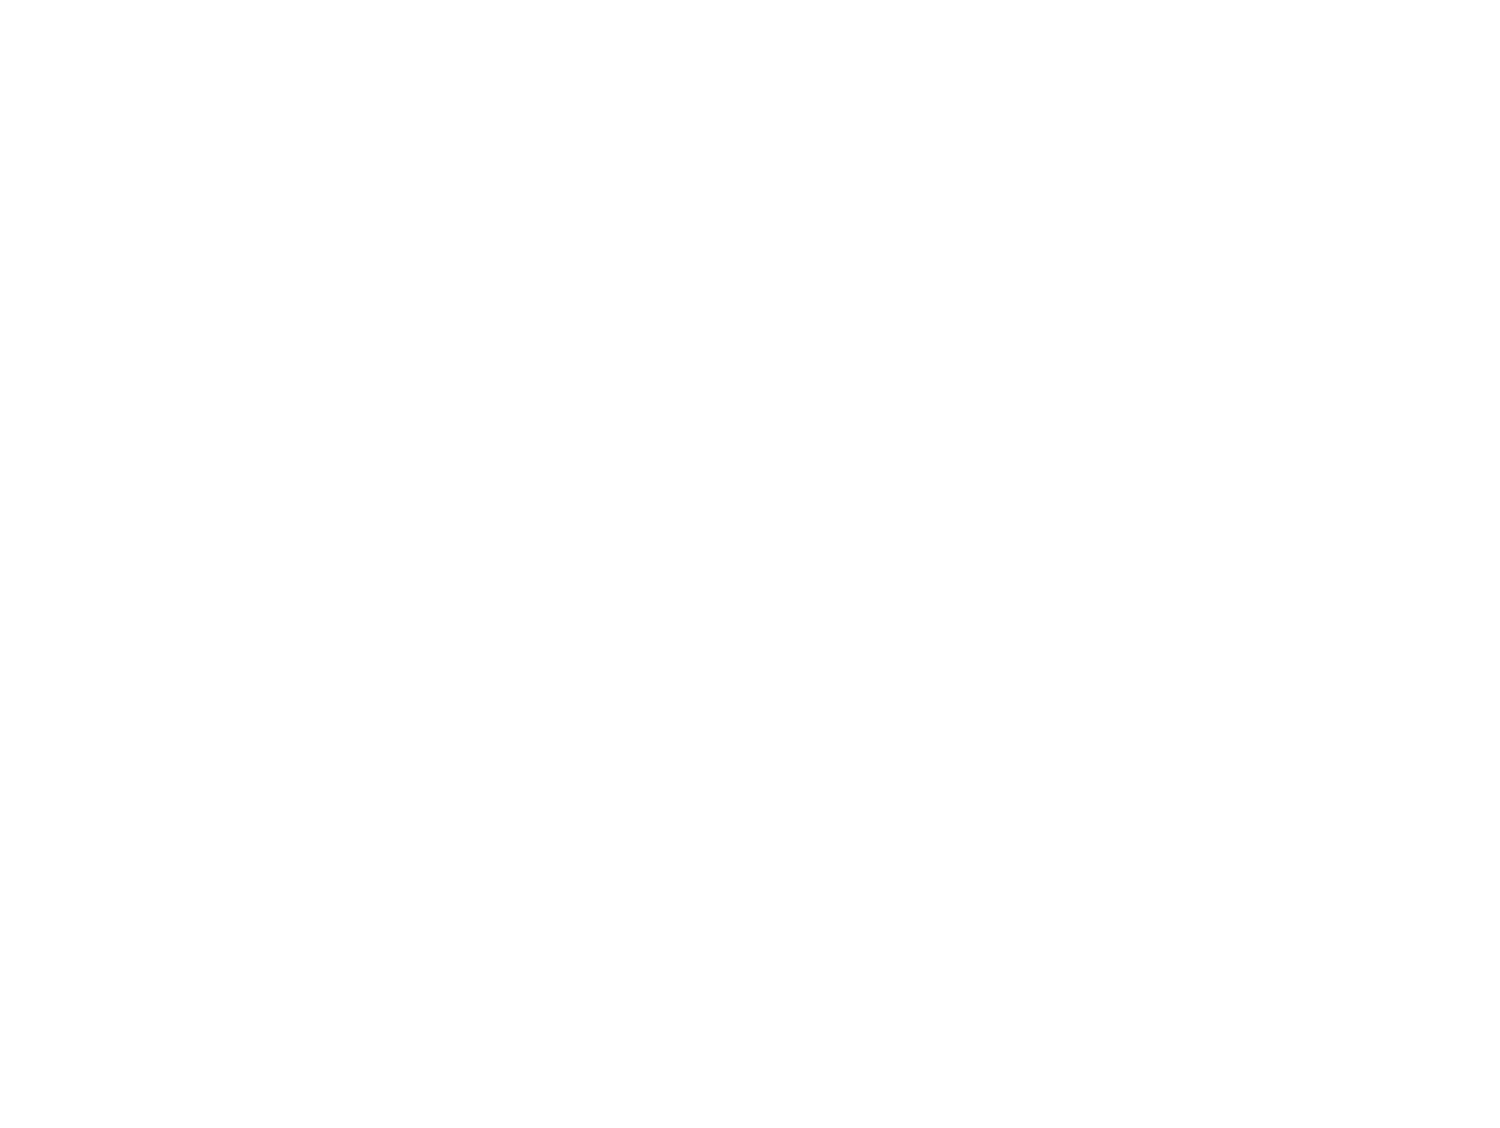 Organized by Onyee